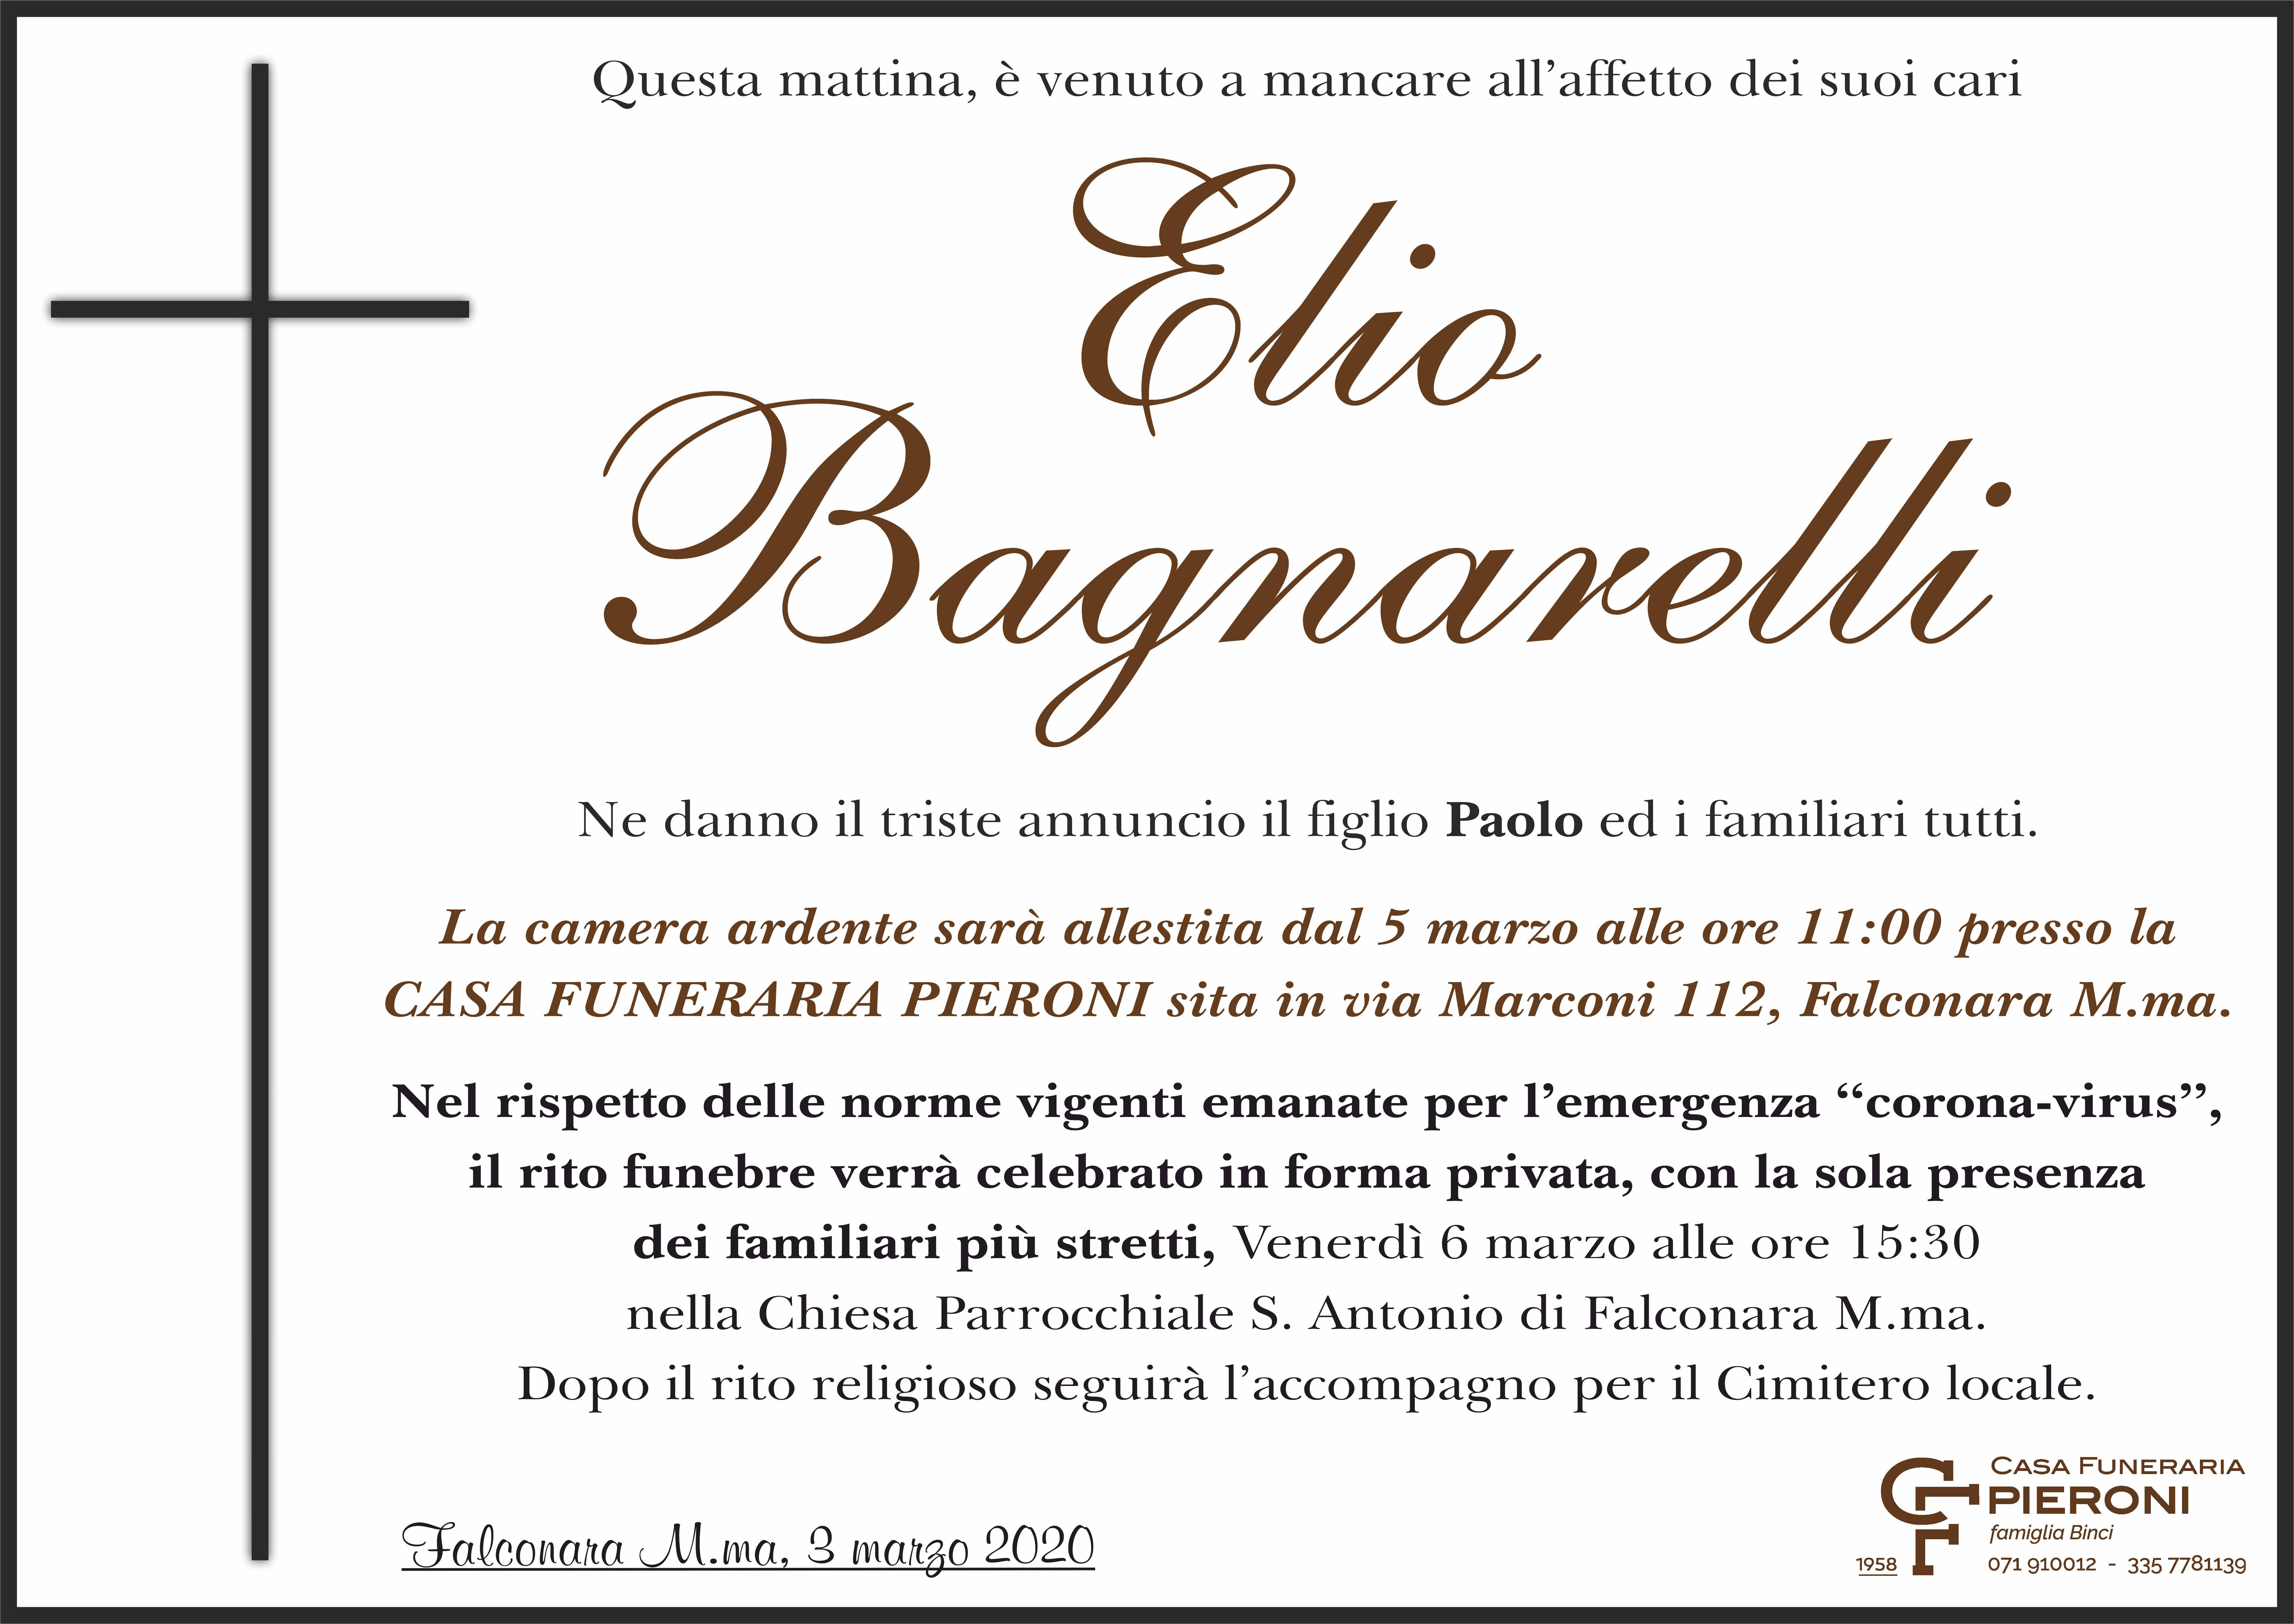 Elio Bagnarelli